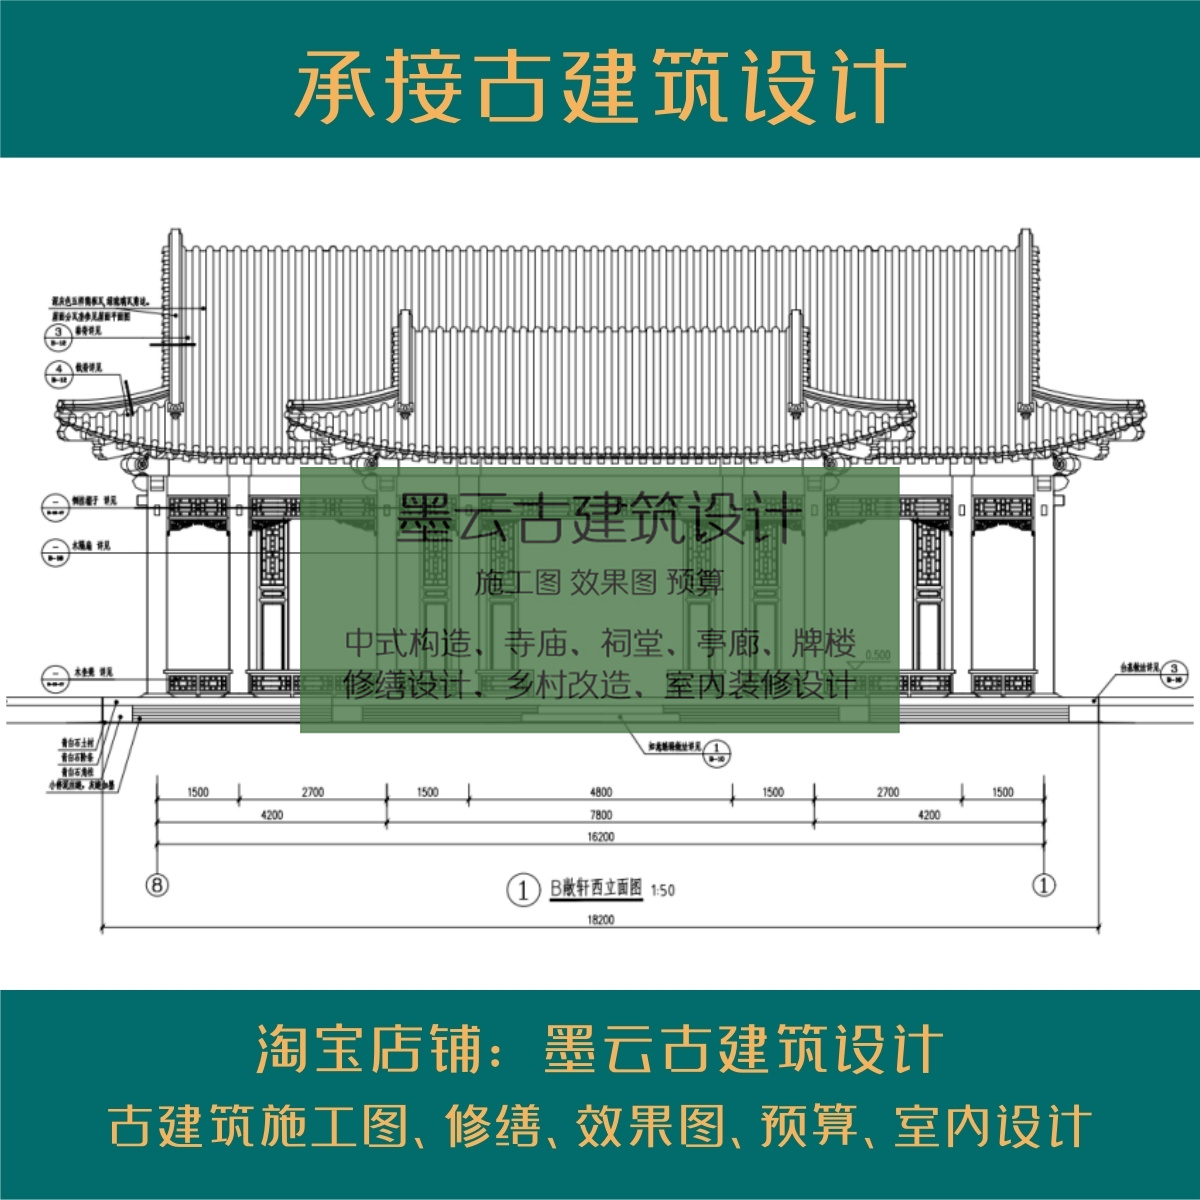 古建筑祠堂设计寺庙设计大殿长廊门楼图纸设计施工图预算效果图